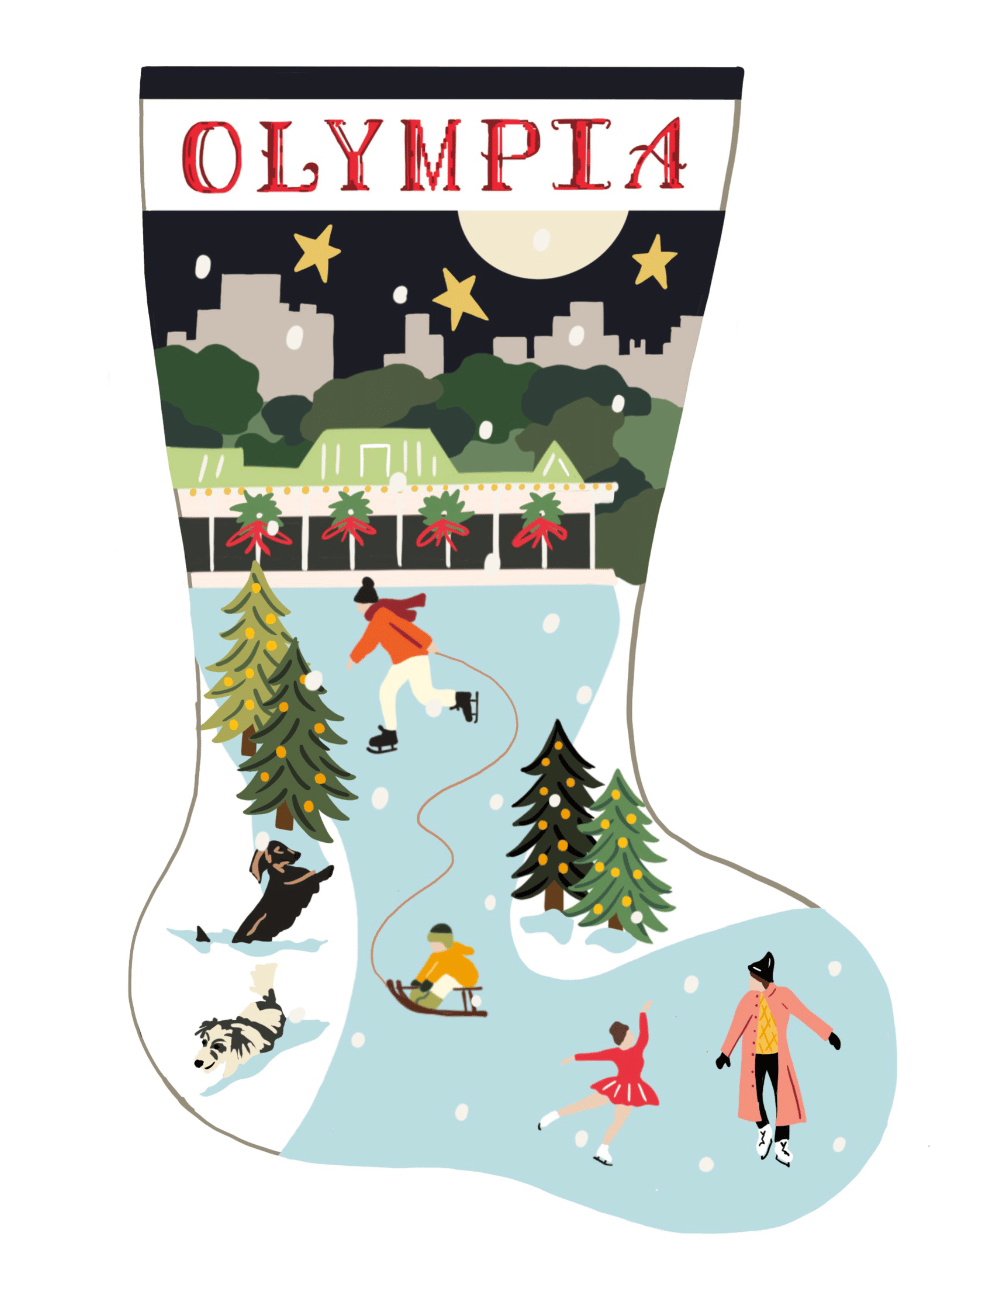 Design Custom Needlepoint Stockings - Christmas & Pet Stockings